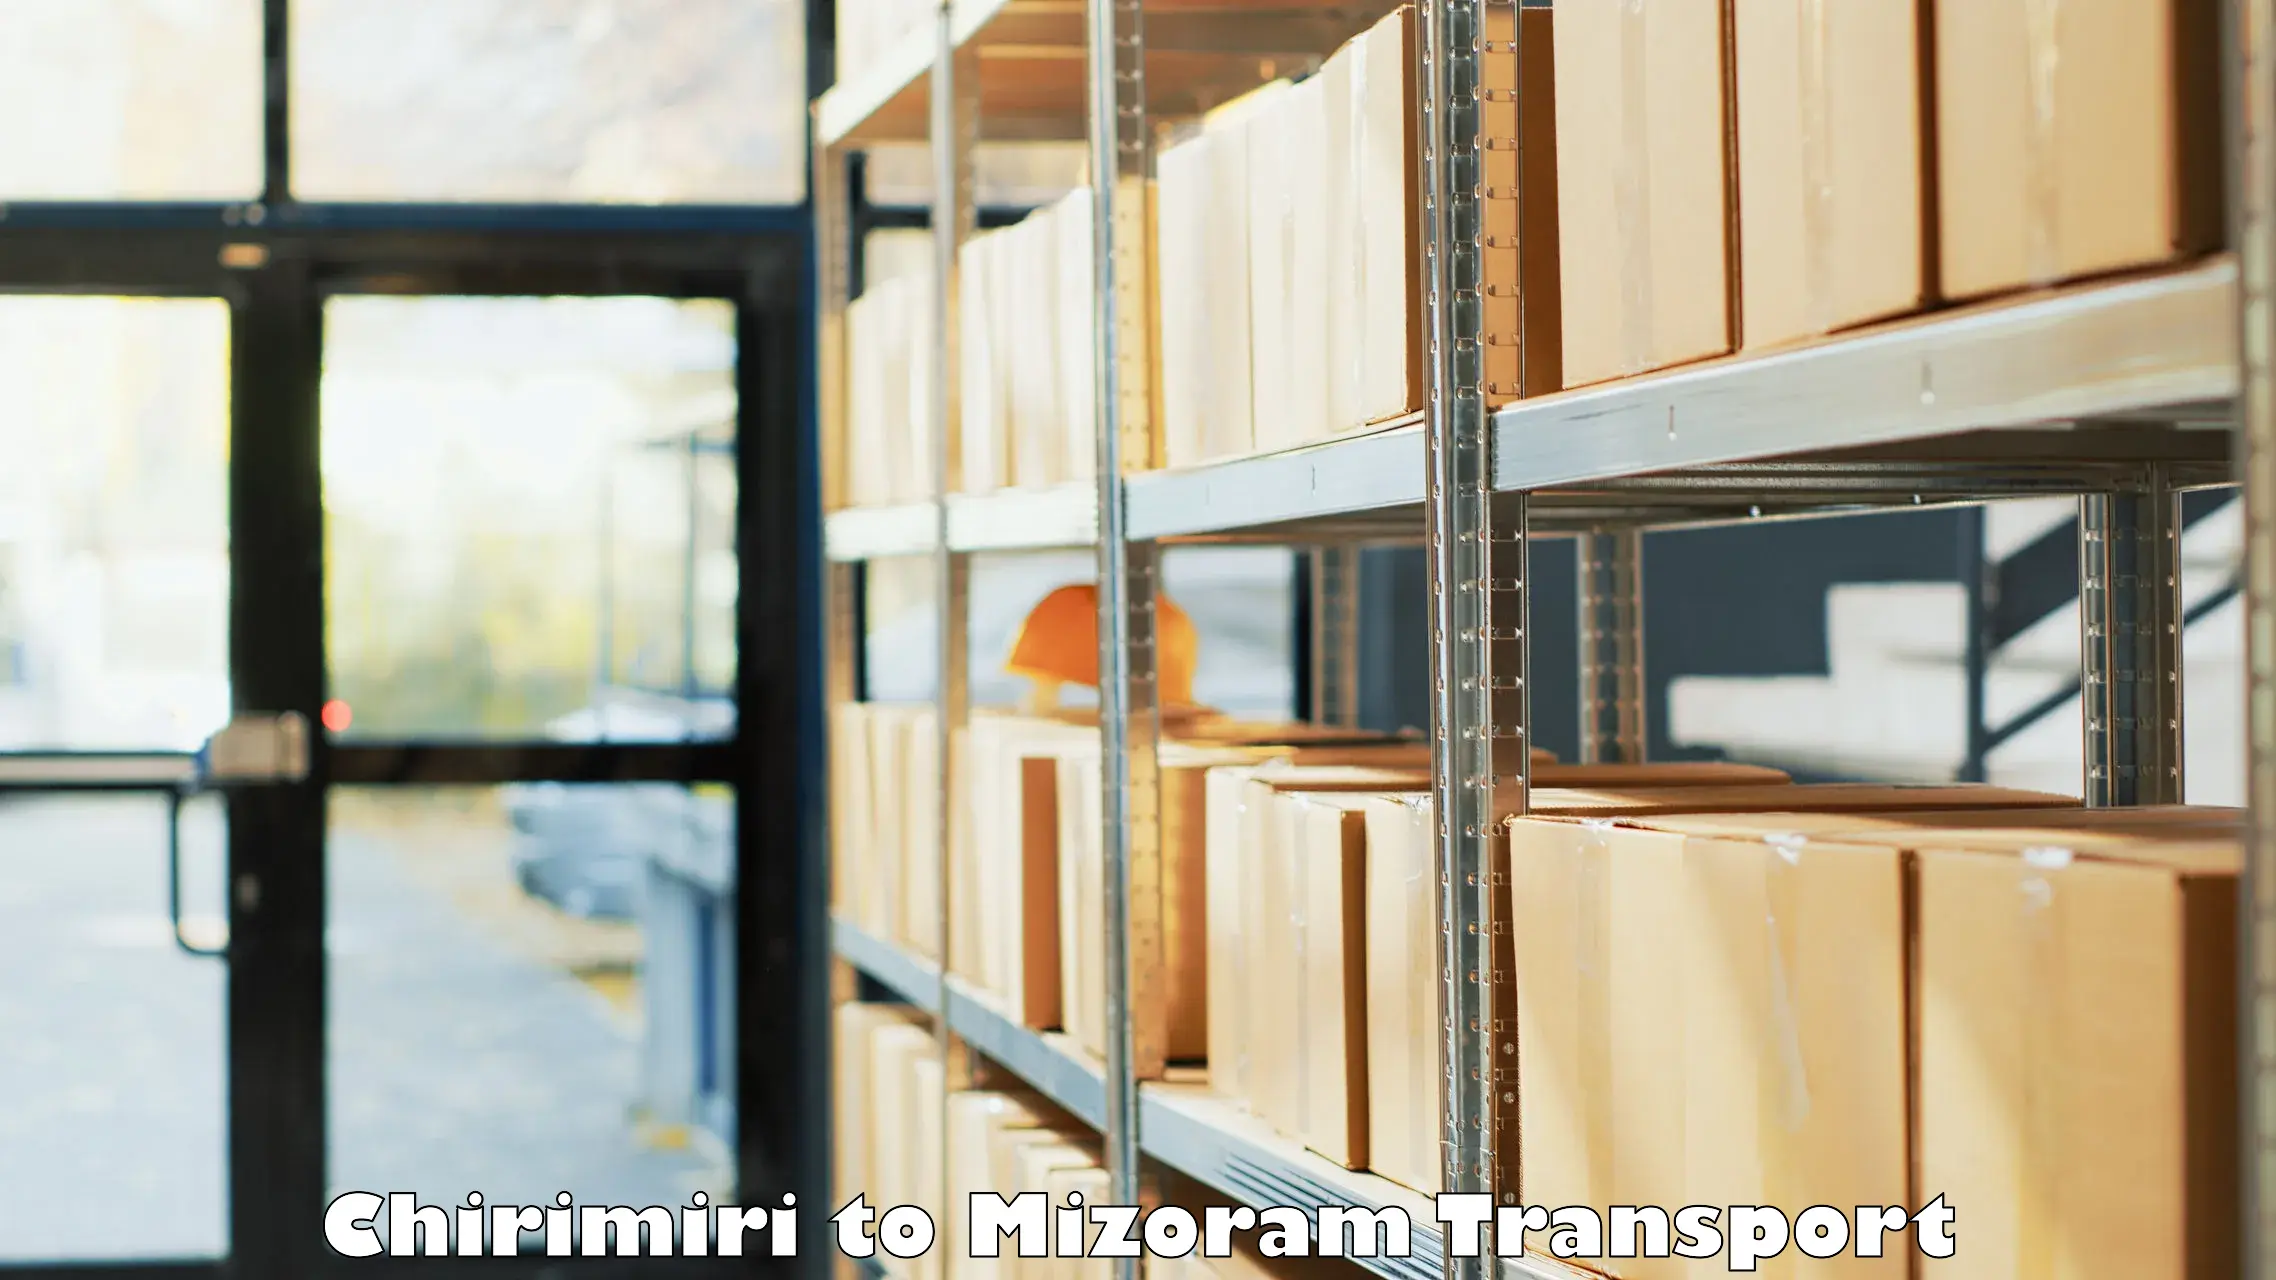 Cargo train transport services Chirimiri to Mizoram